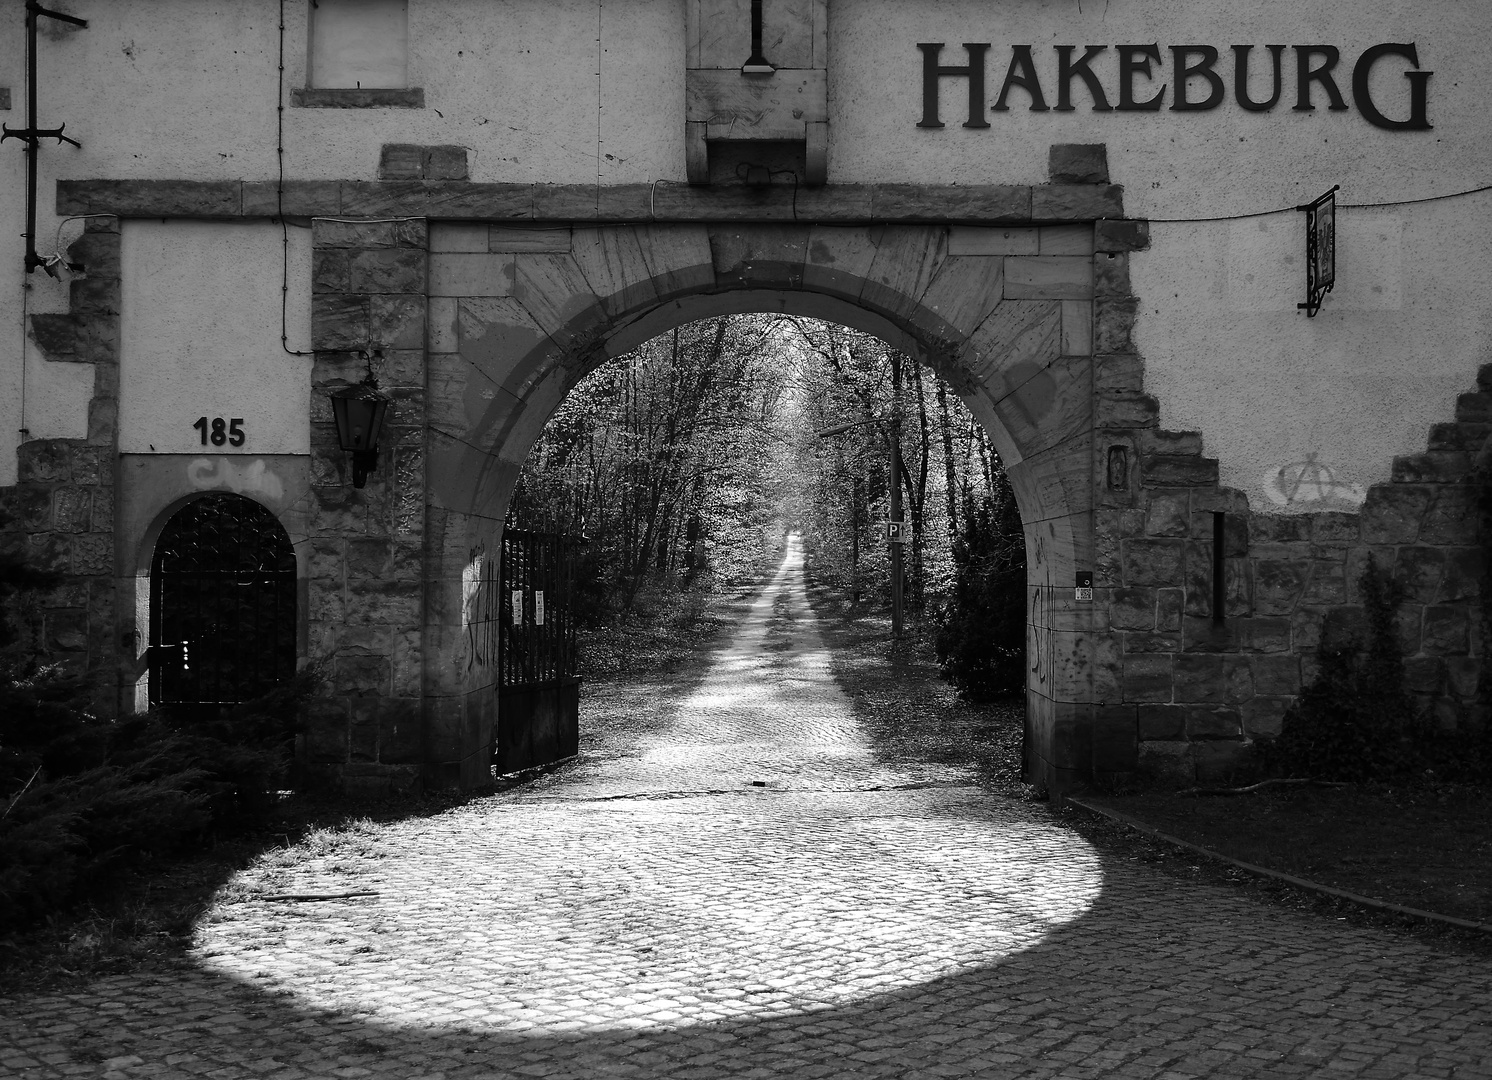 Hakeburg